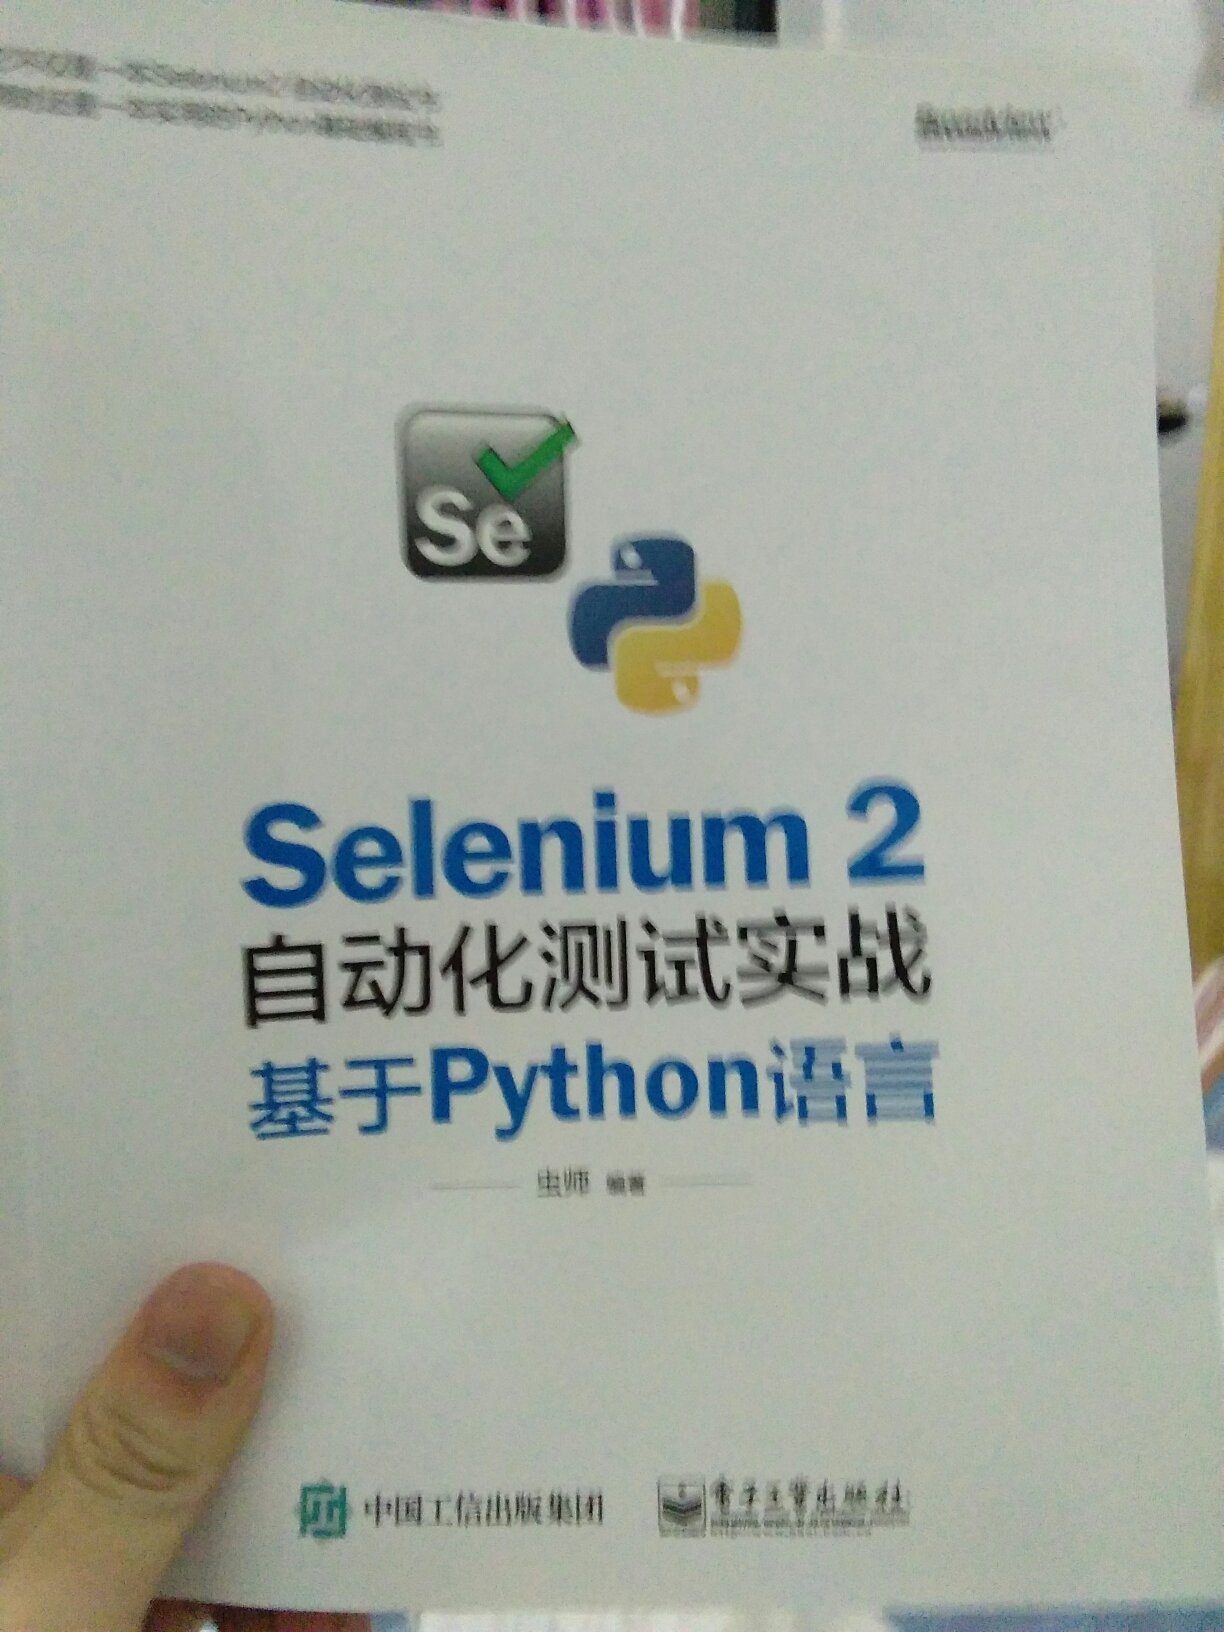 学习软件测试，用这本书，很不错，物流速度很快，不错的体验。